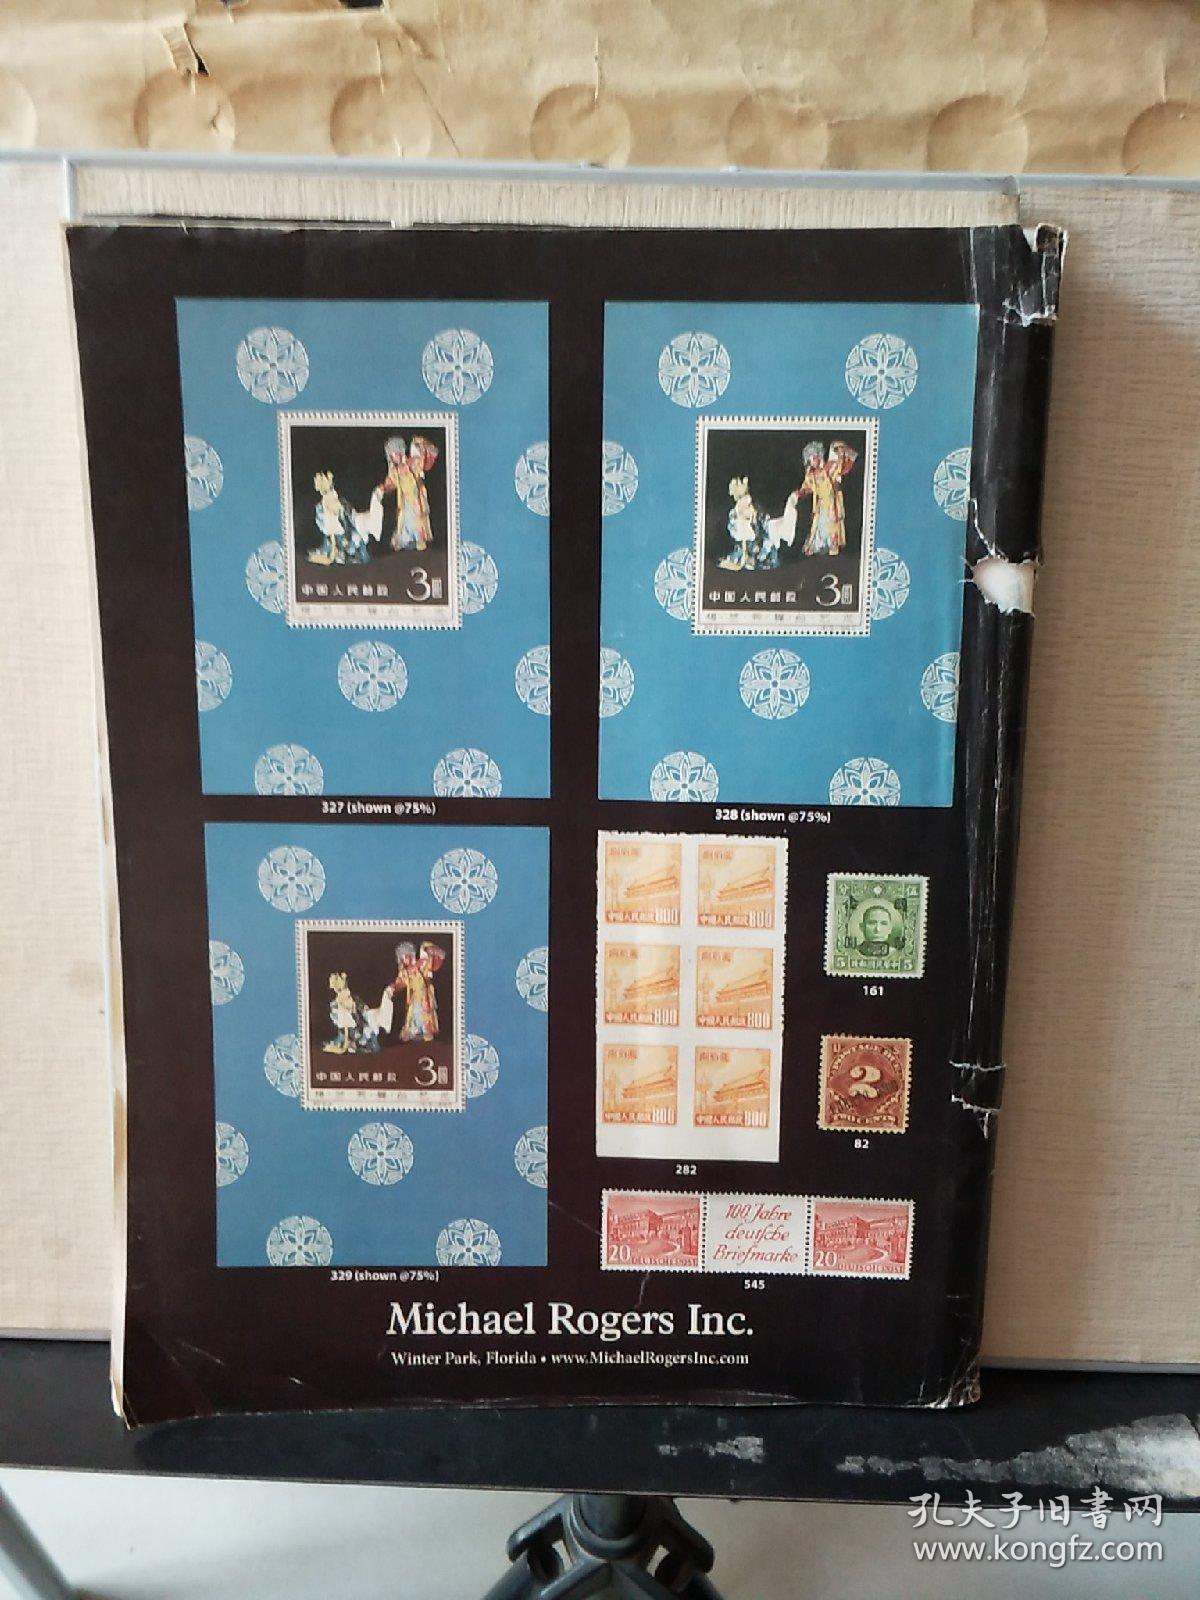 Michael Rogers Inc.  Knowledge · Integrity · Service （PUBLIC AUCTION 128  June 29, 2012）